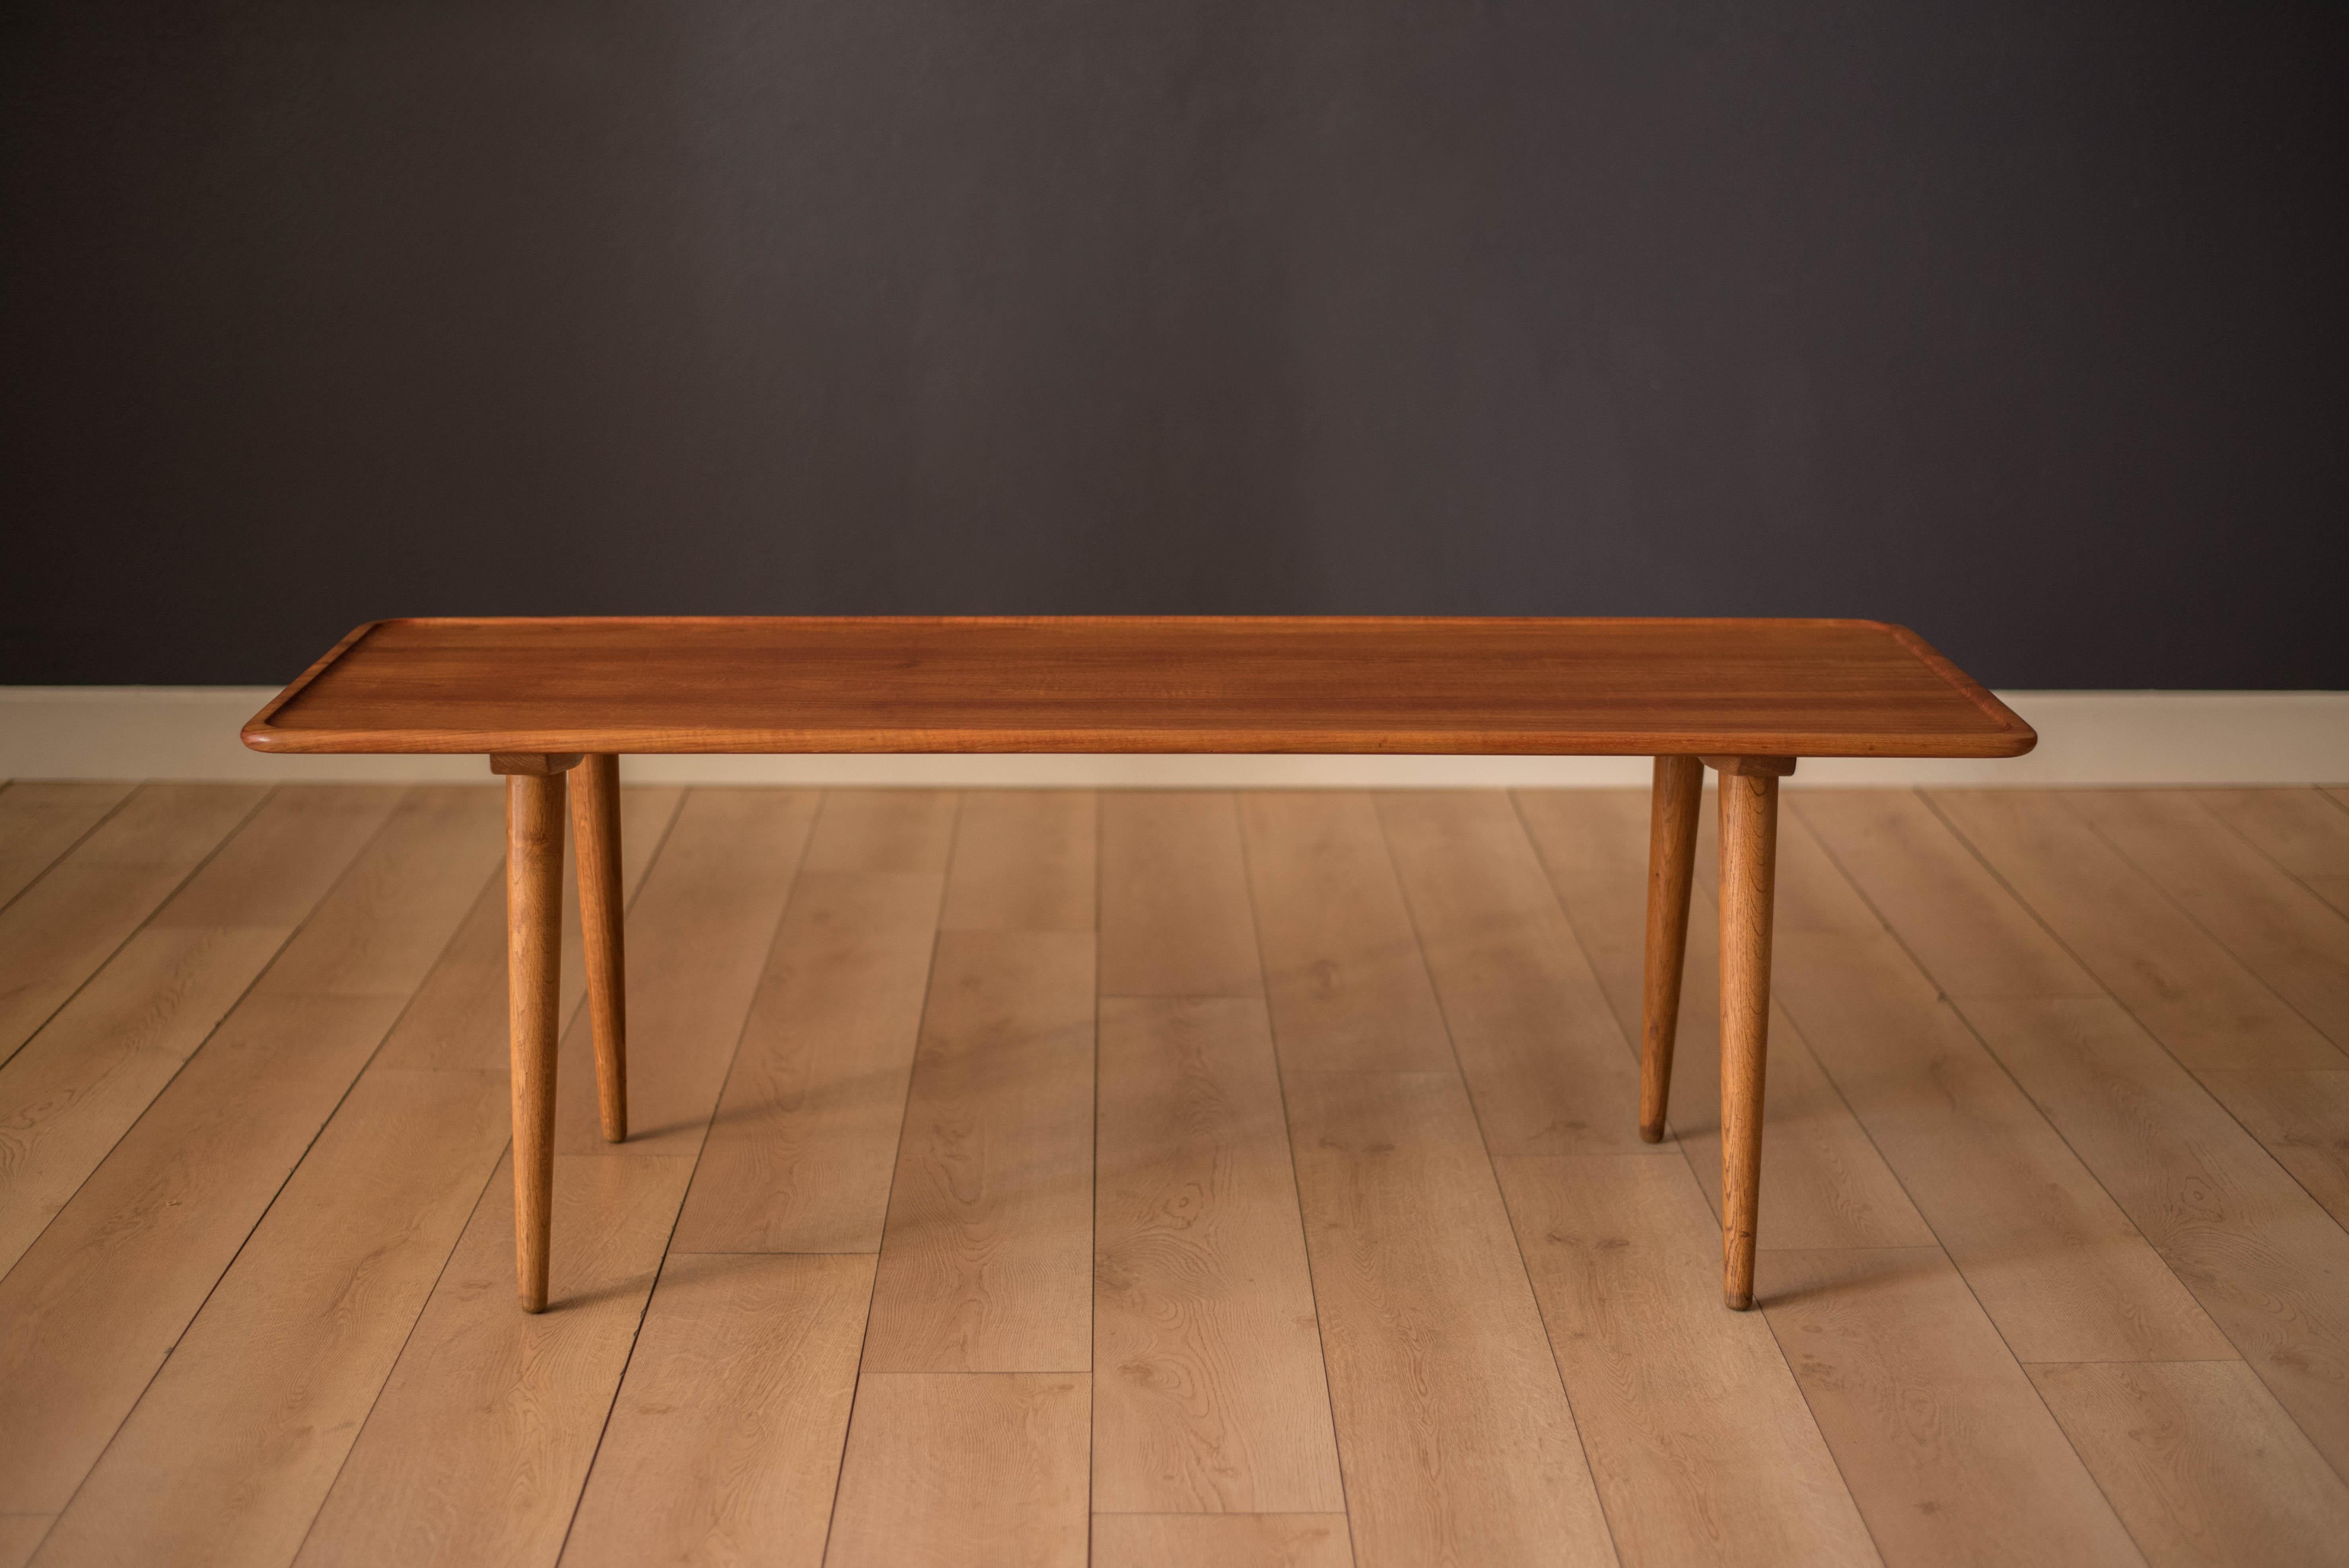 Original Couchtisch aus der Jahrhundertmitte, entworfen von Hans Wegner für Andreas Tuck, Modell AT-11. Diese Tischplatte aus massivem, geplanktem Teakholz hat ein schlichtes, minimalistisches Design mit erhöhten, abgerundeten Kanten. Gestützt von